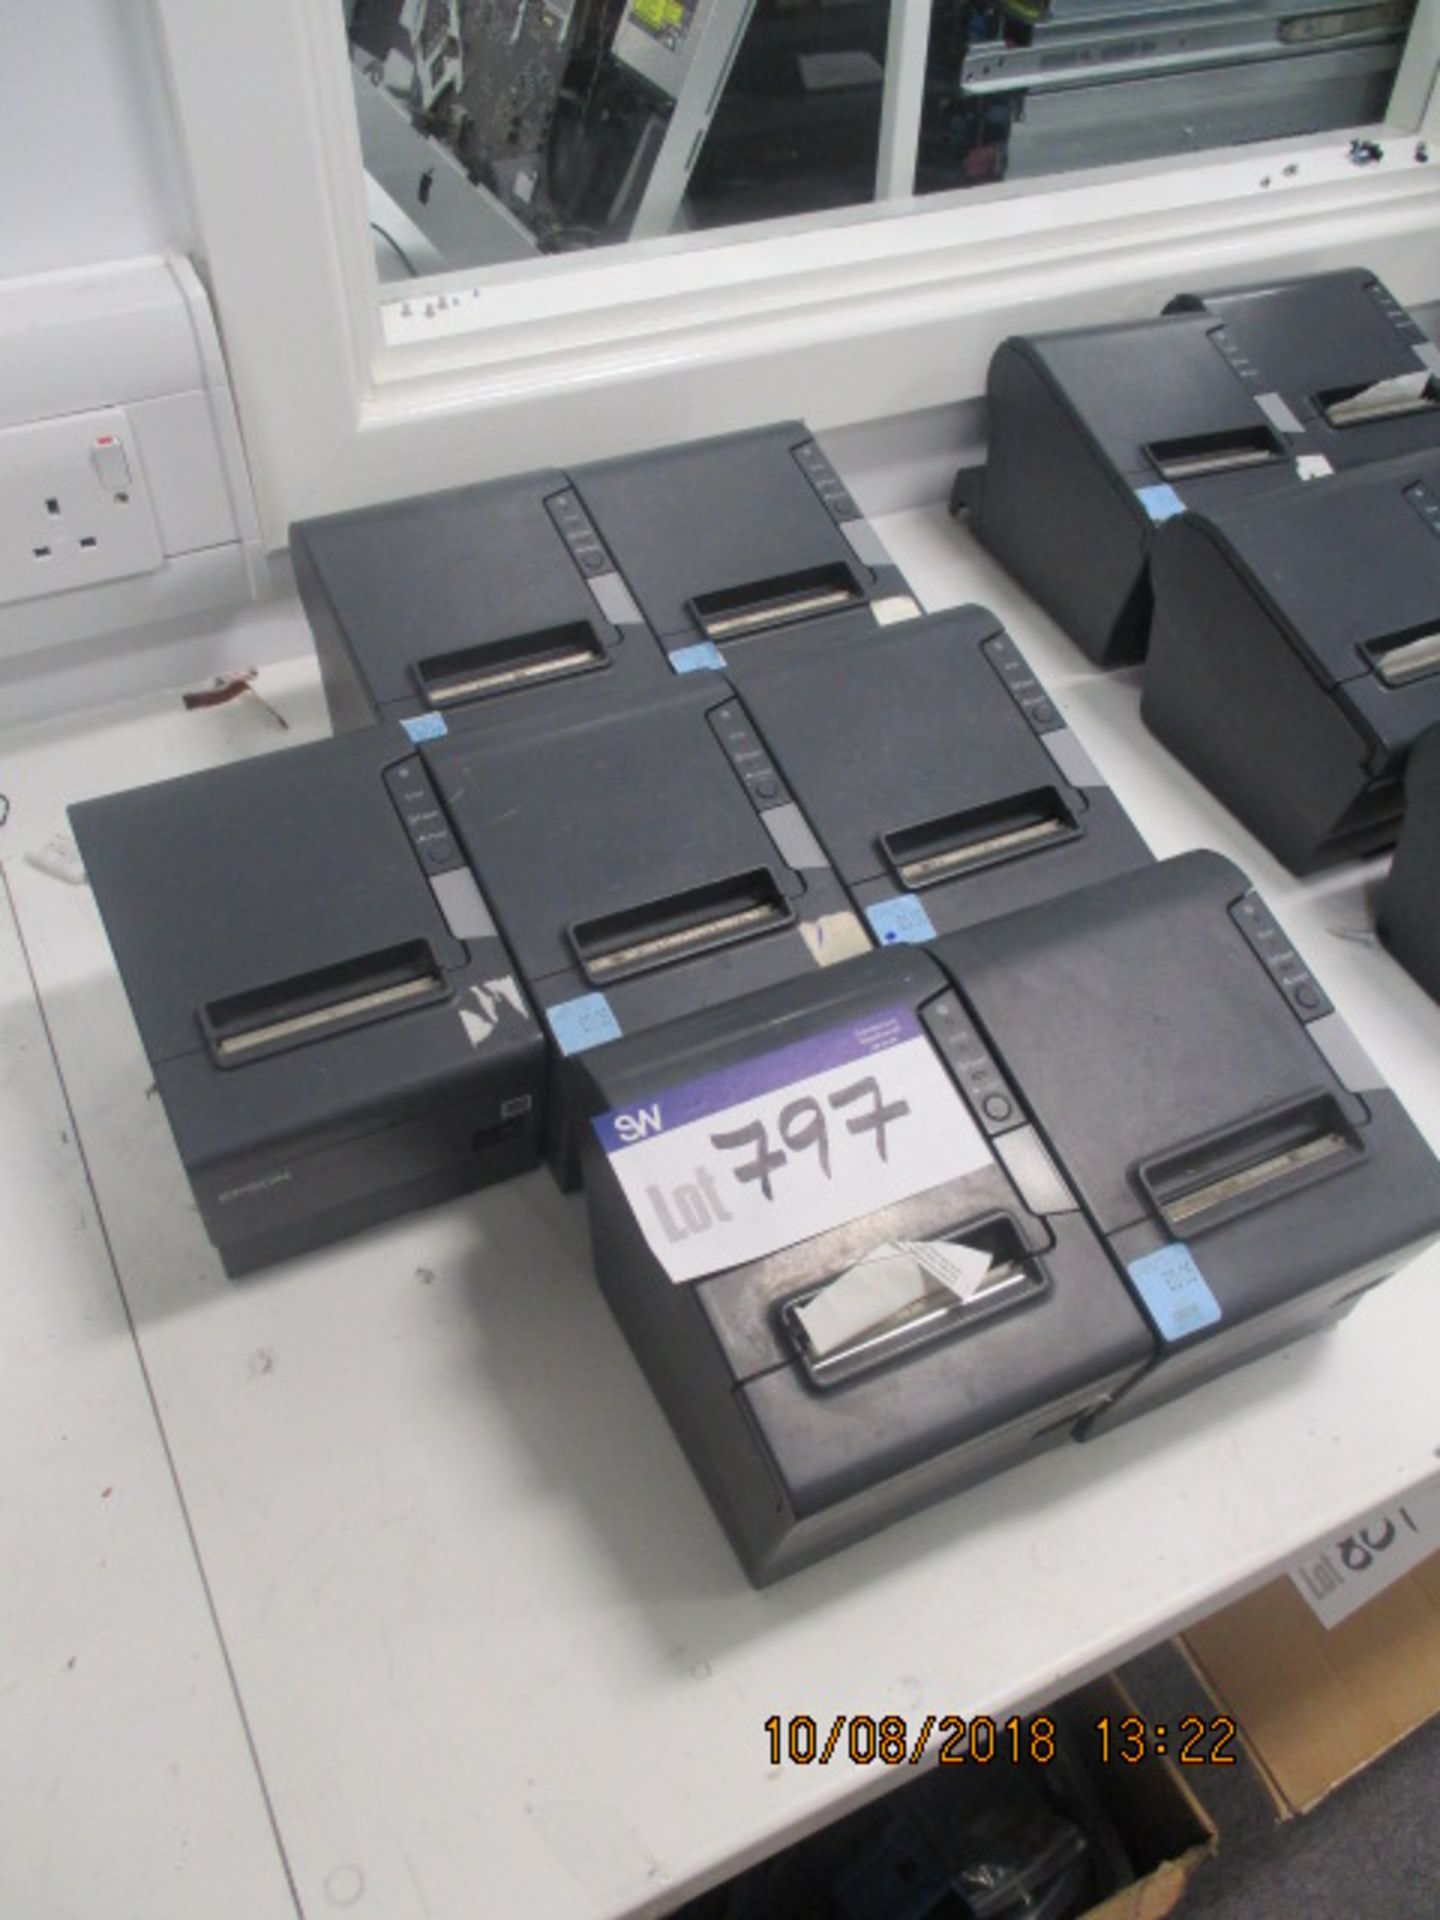 7 x Epson Label Printers